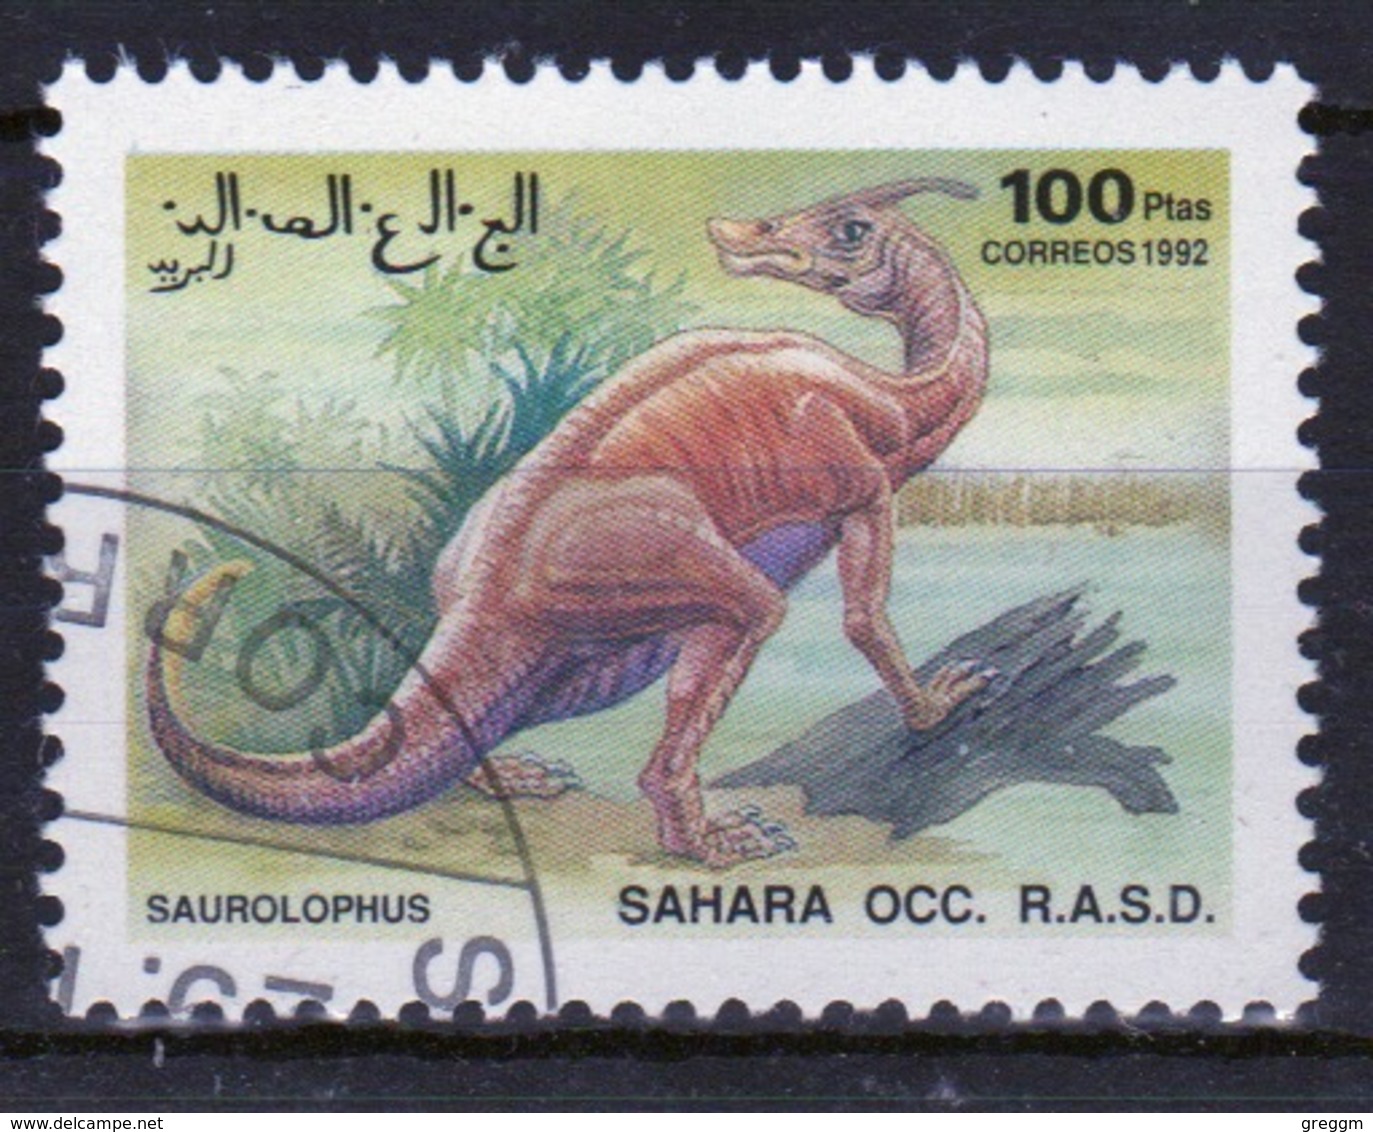 Sahara OCC 1992 Single 100 Ptas Stamp Highlighting Dinosaurs. - Cinderellas